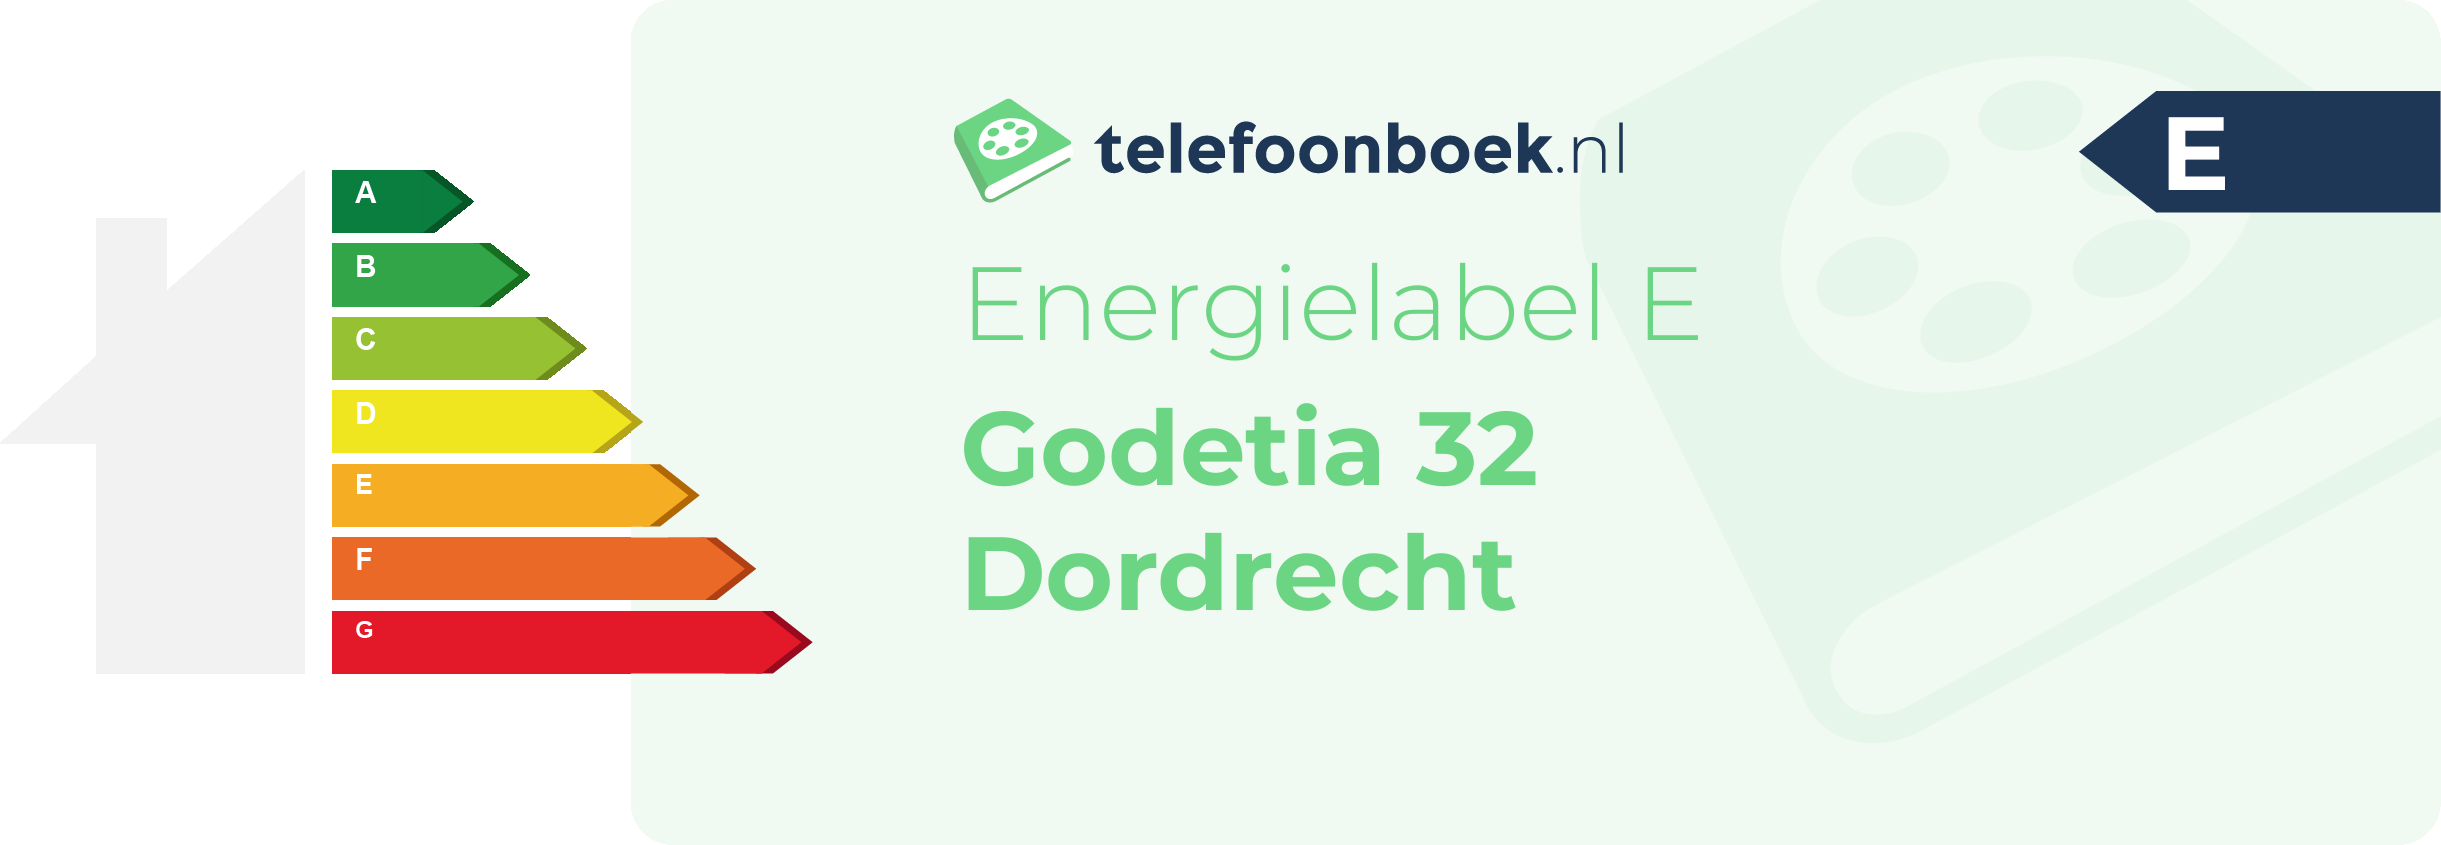 Energielabel Godetia 32 Dordrecht